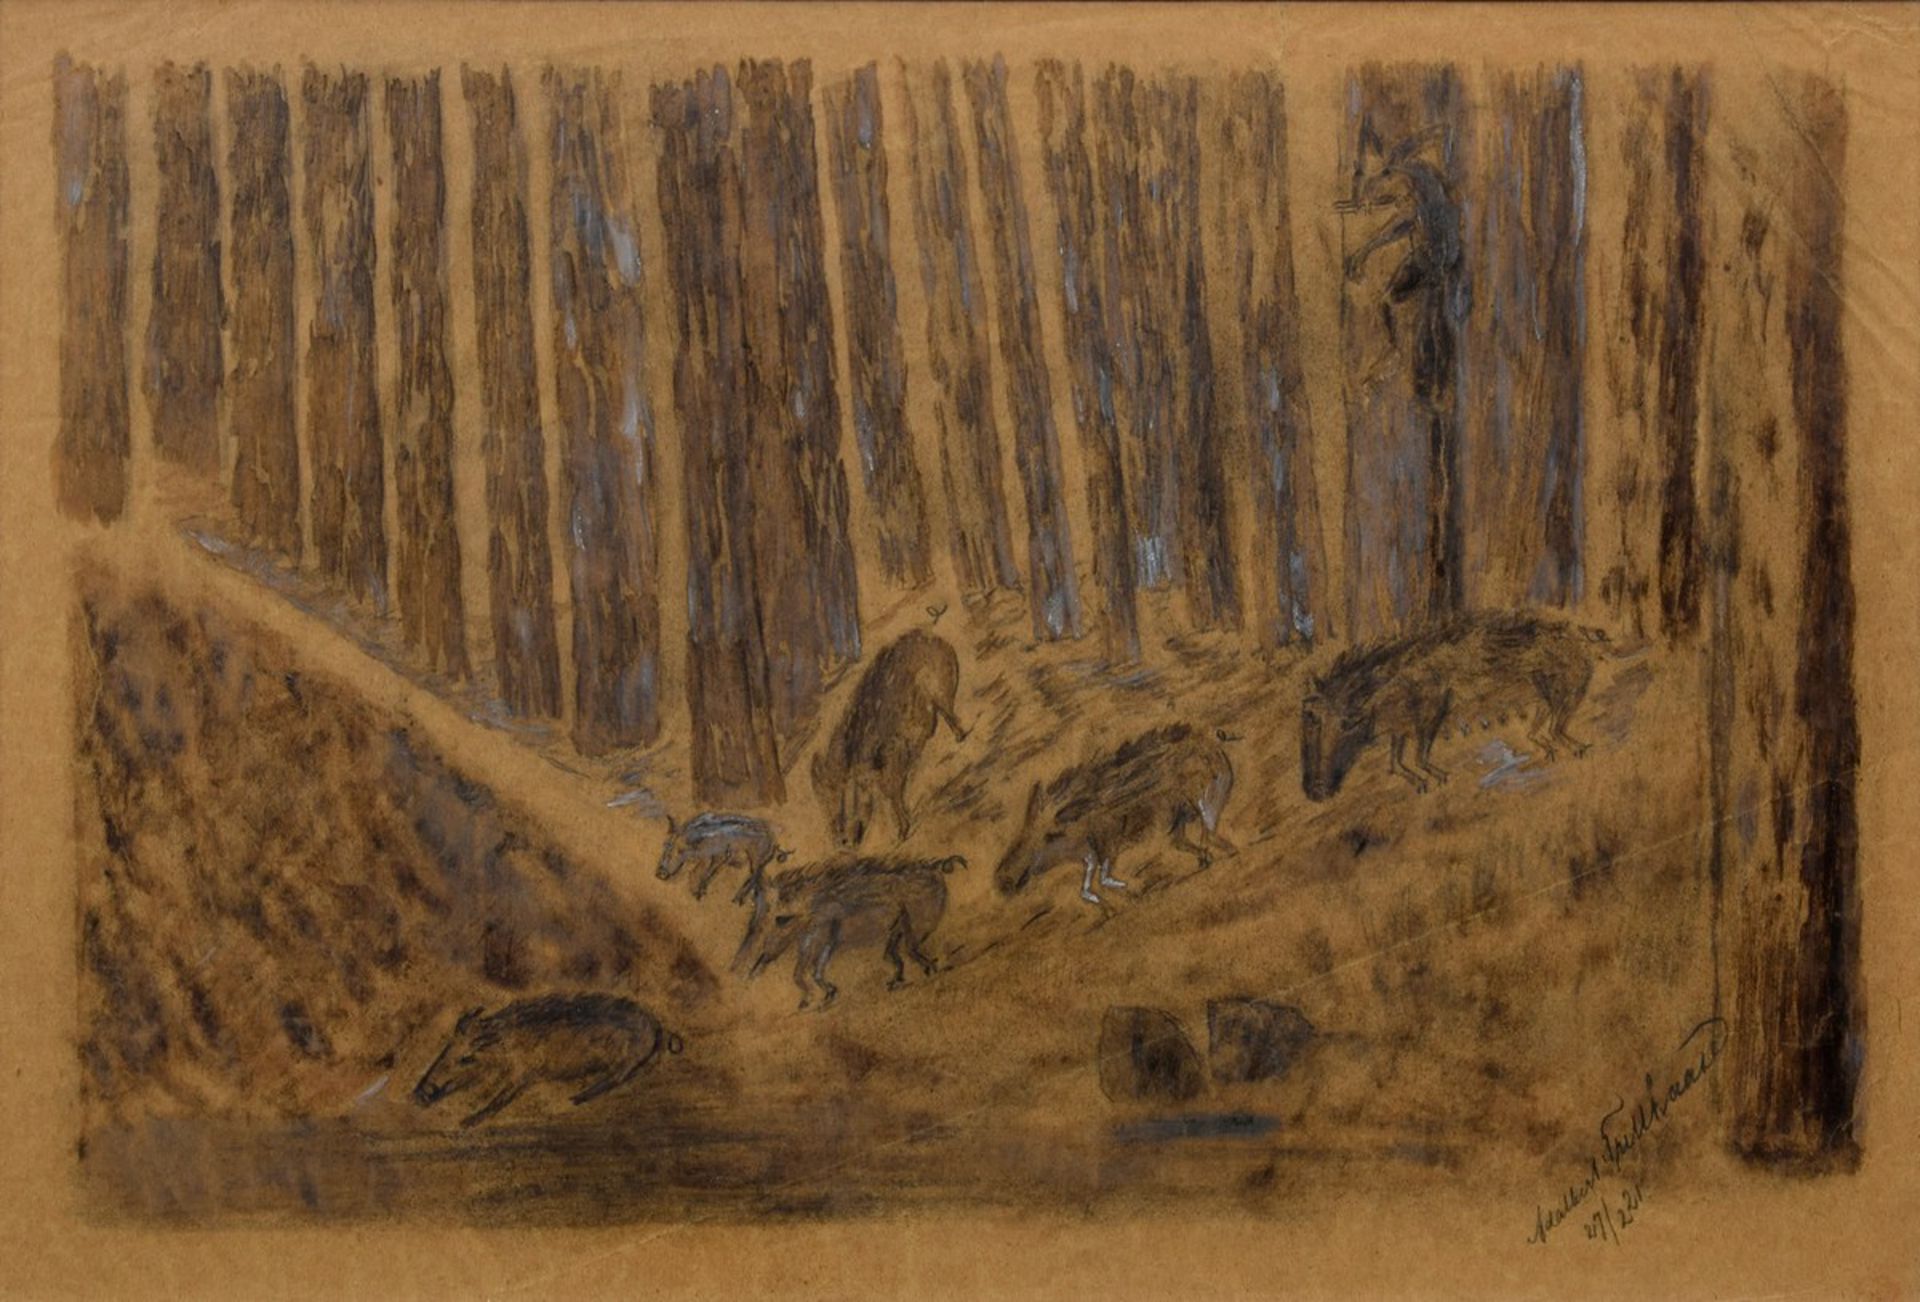 Trillhaase, Adalbert (1858-1936) "Die Wildschweine" 1921, Kohlezeichnung, u.r. sign./dat., verso